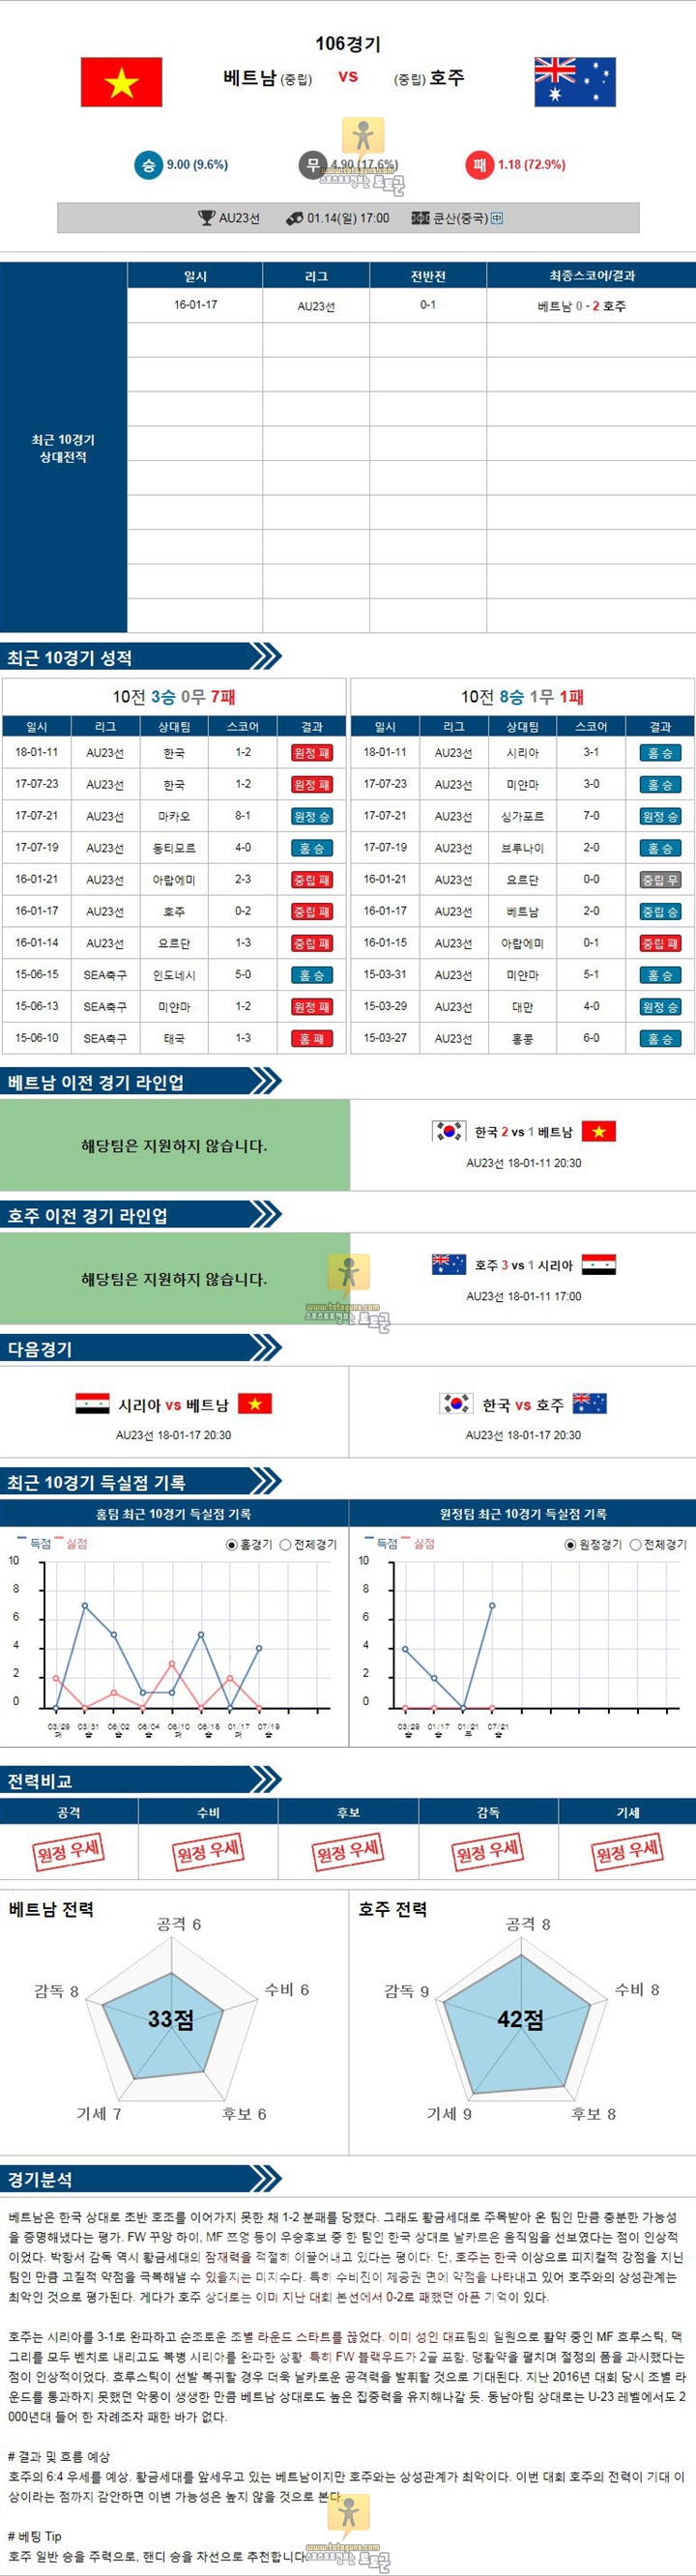 [U23챔피언십] 1월 14일 17:00 축구분석 베트남 vs 호주